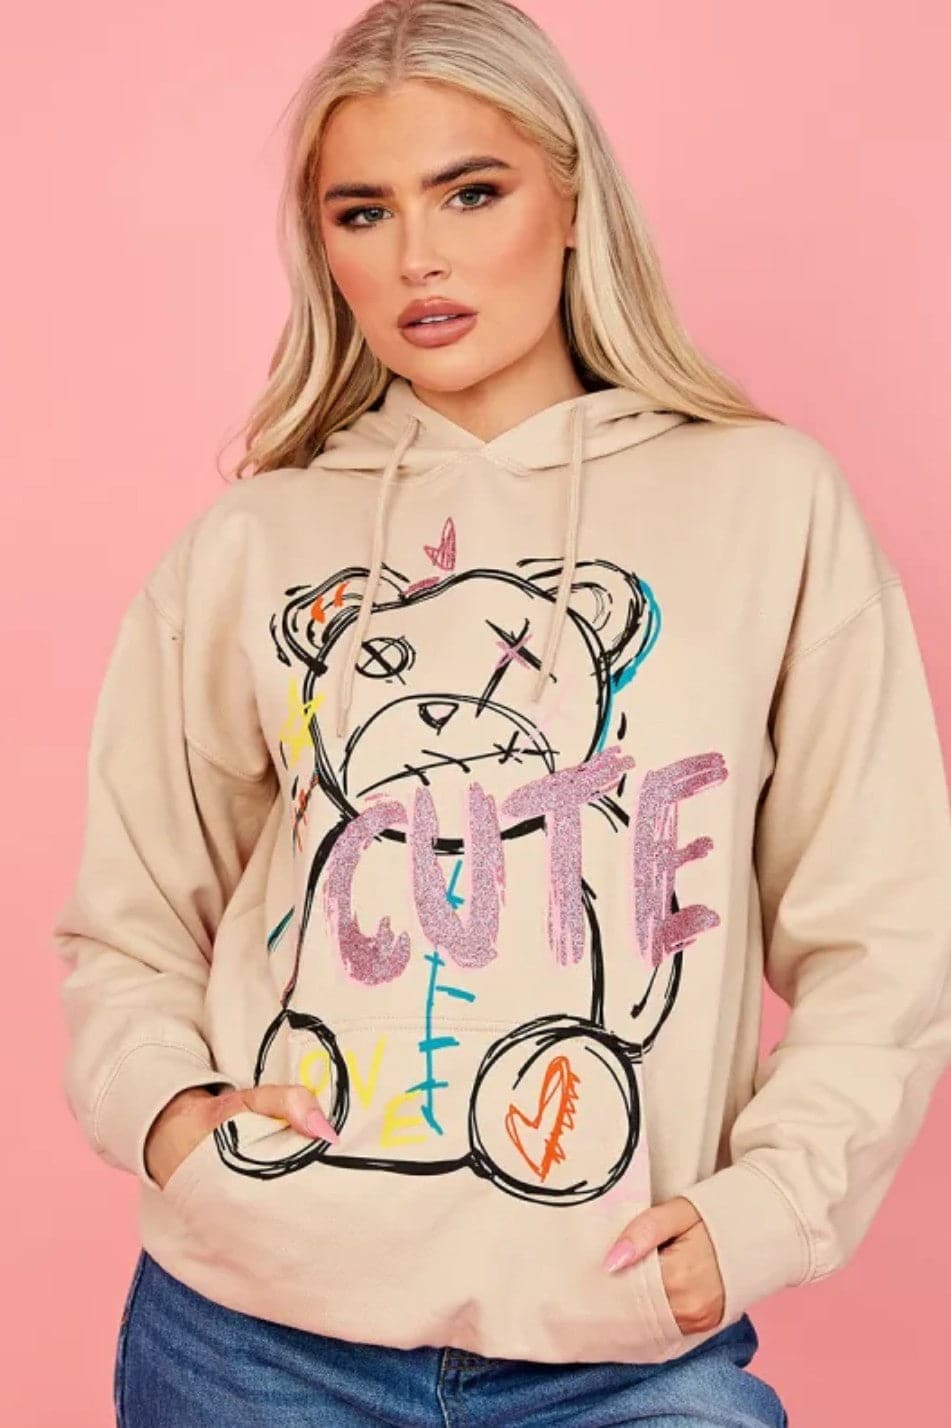 Hoodie Sweatshirt  Cute Teddy Graphics - Premium Hoodie Sweatshirt from justgal - Just £16.99! Shop now at justgal